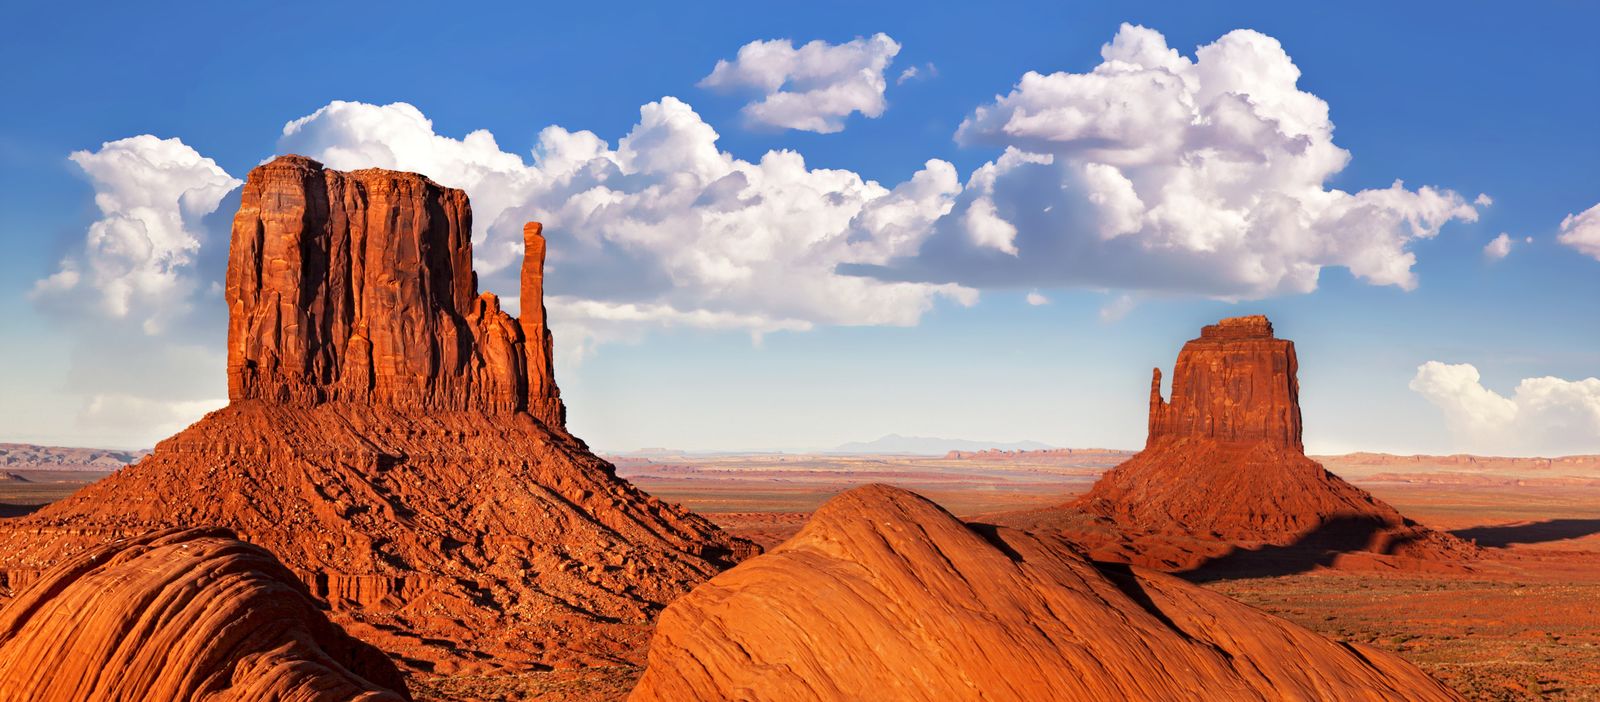 Die einzigartige Landschaft des Monument Valley